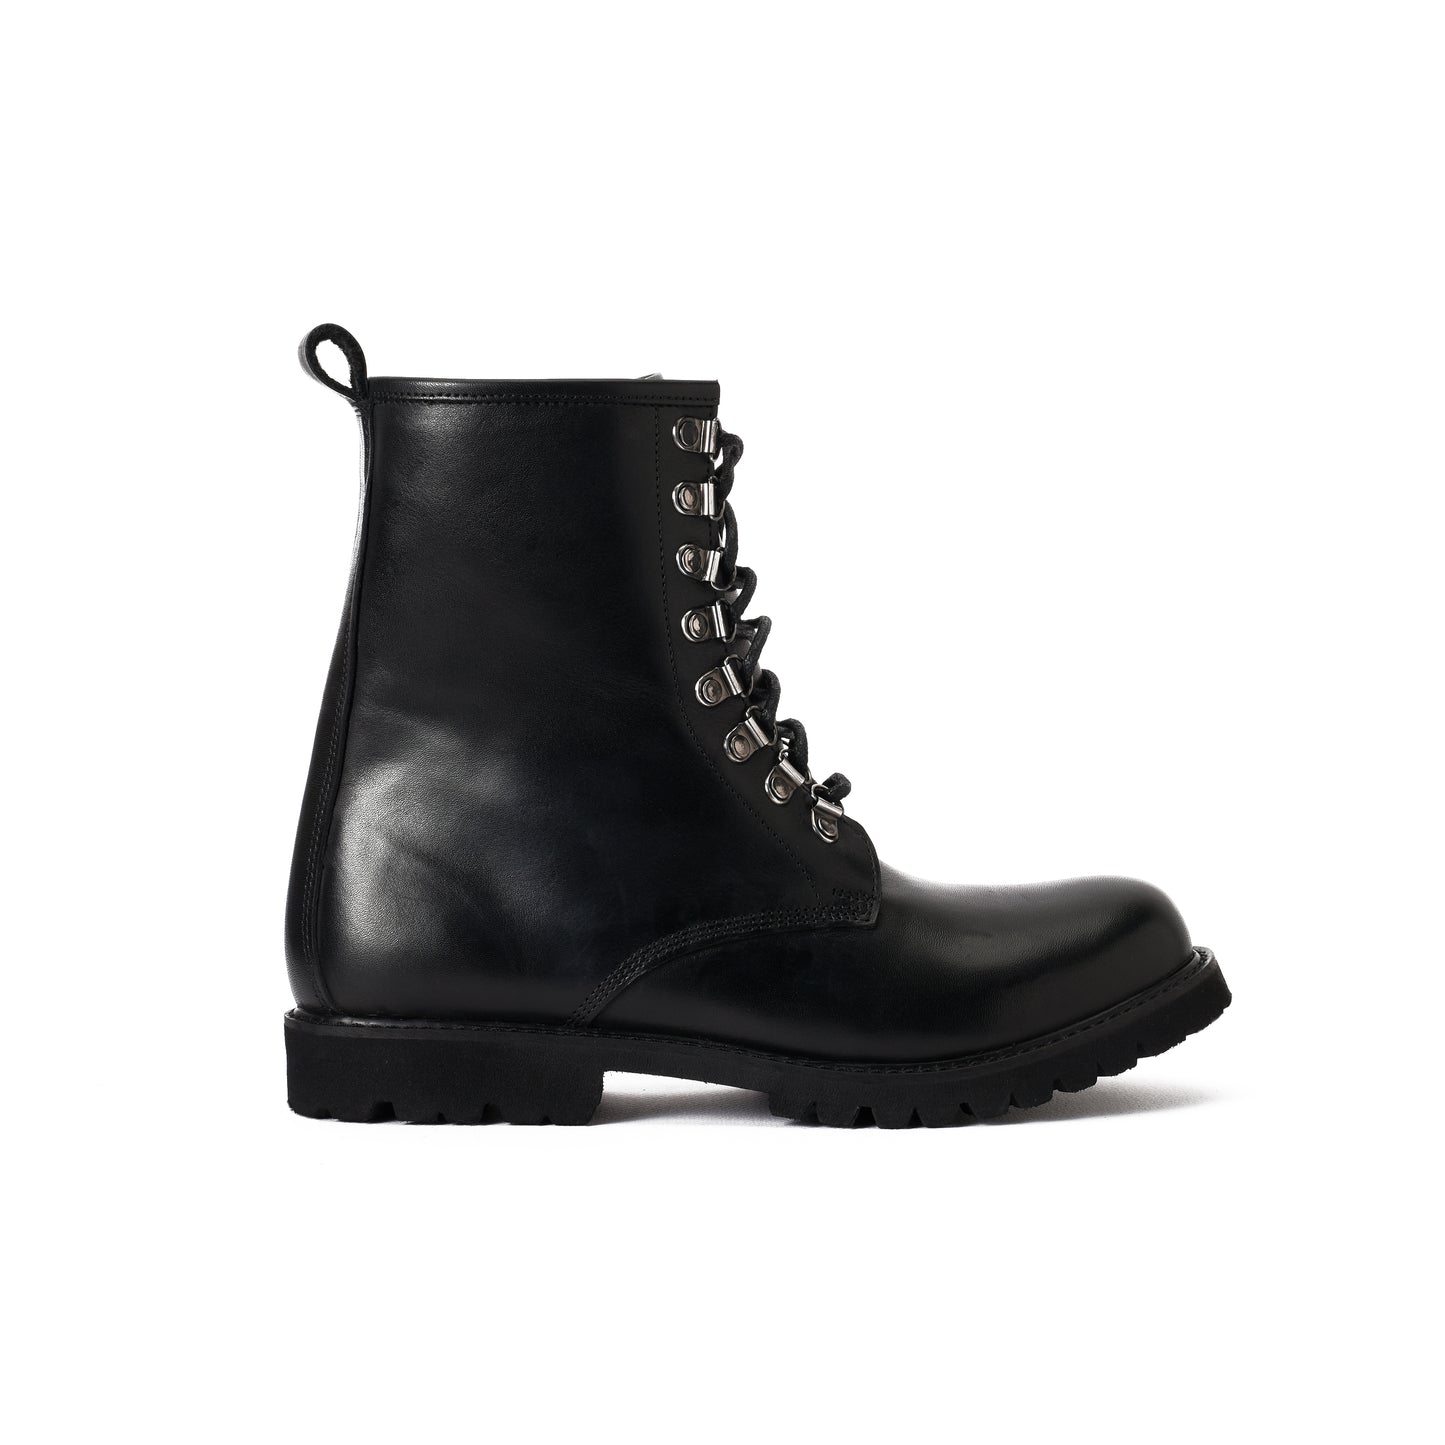 Black Combat boots